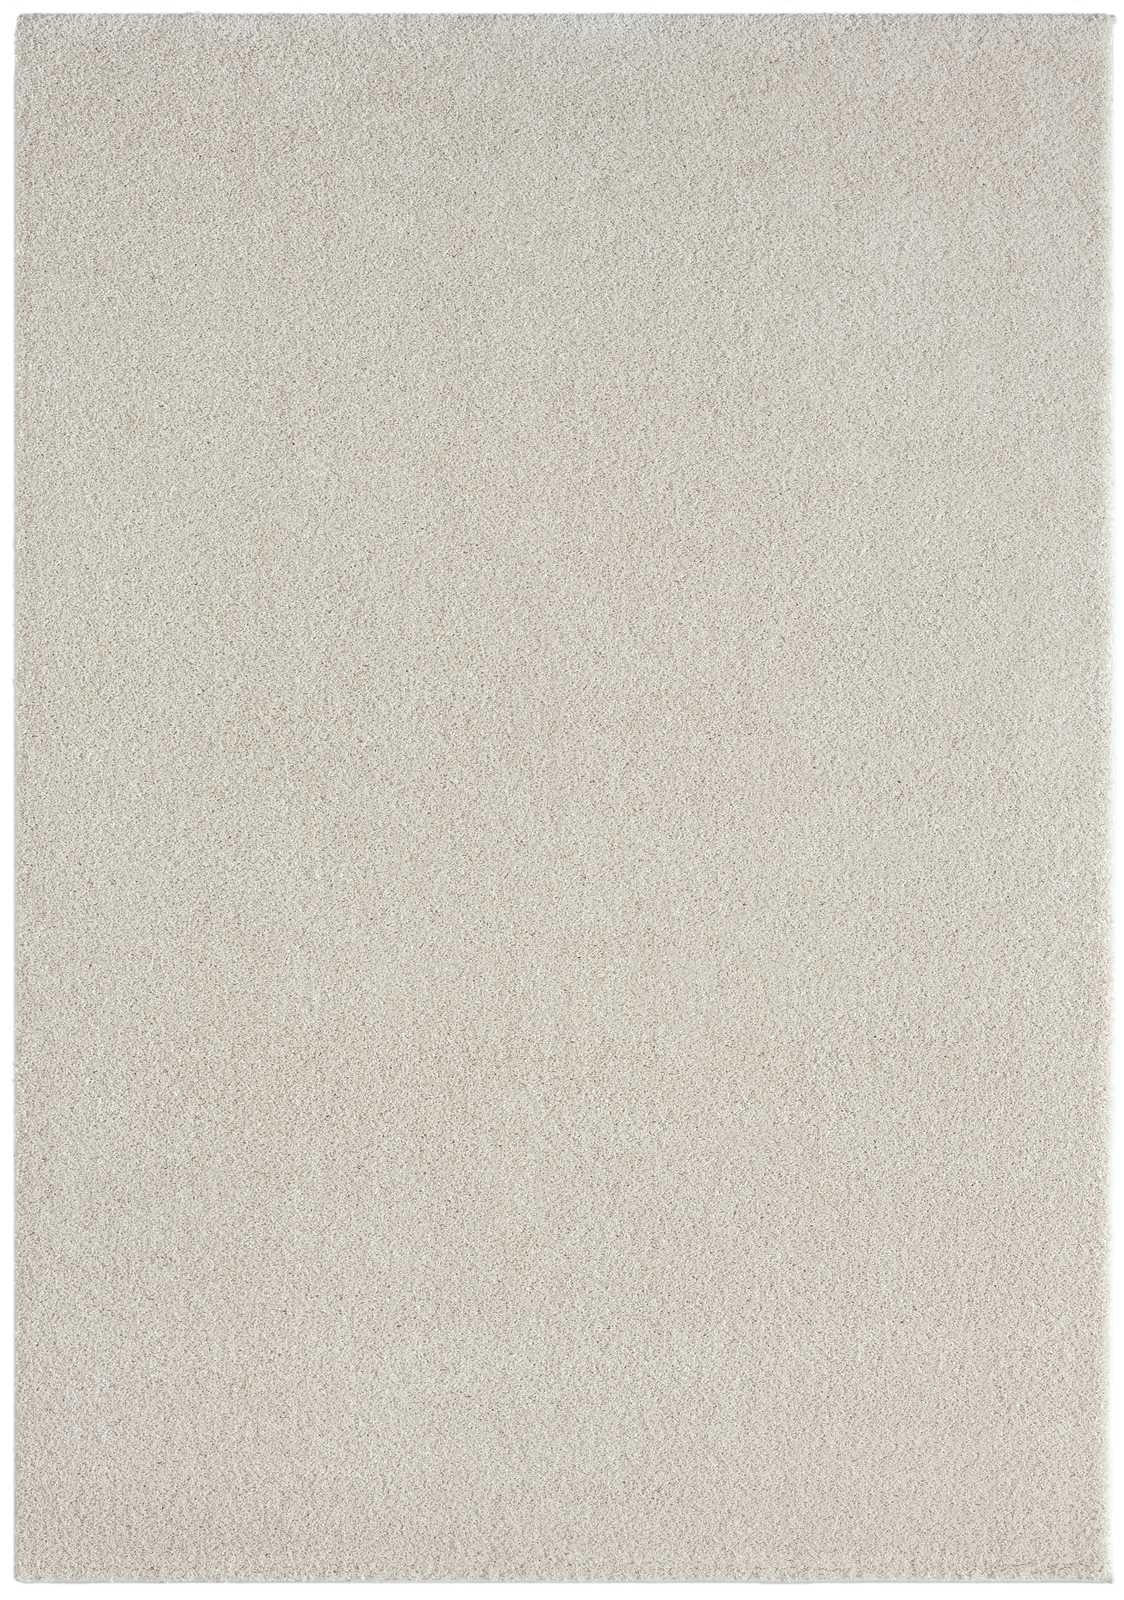             Cremefarbener Kurzflor Teppich – 170 x 120 cm
        